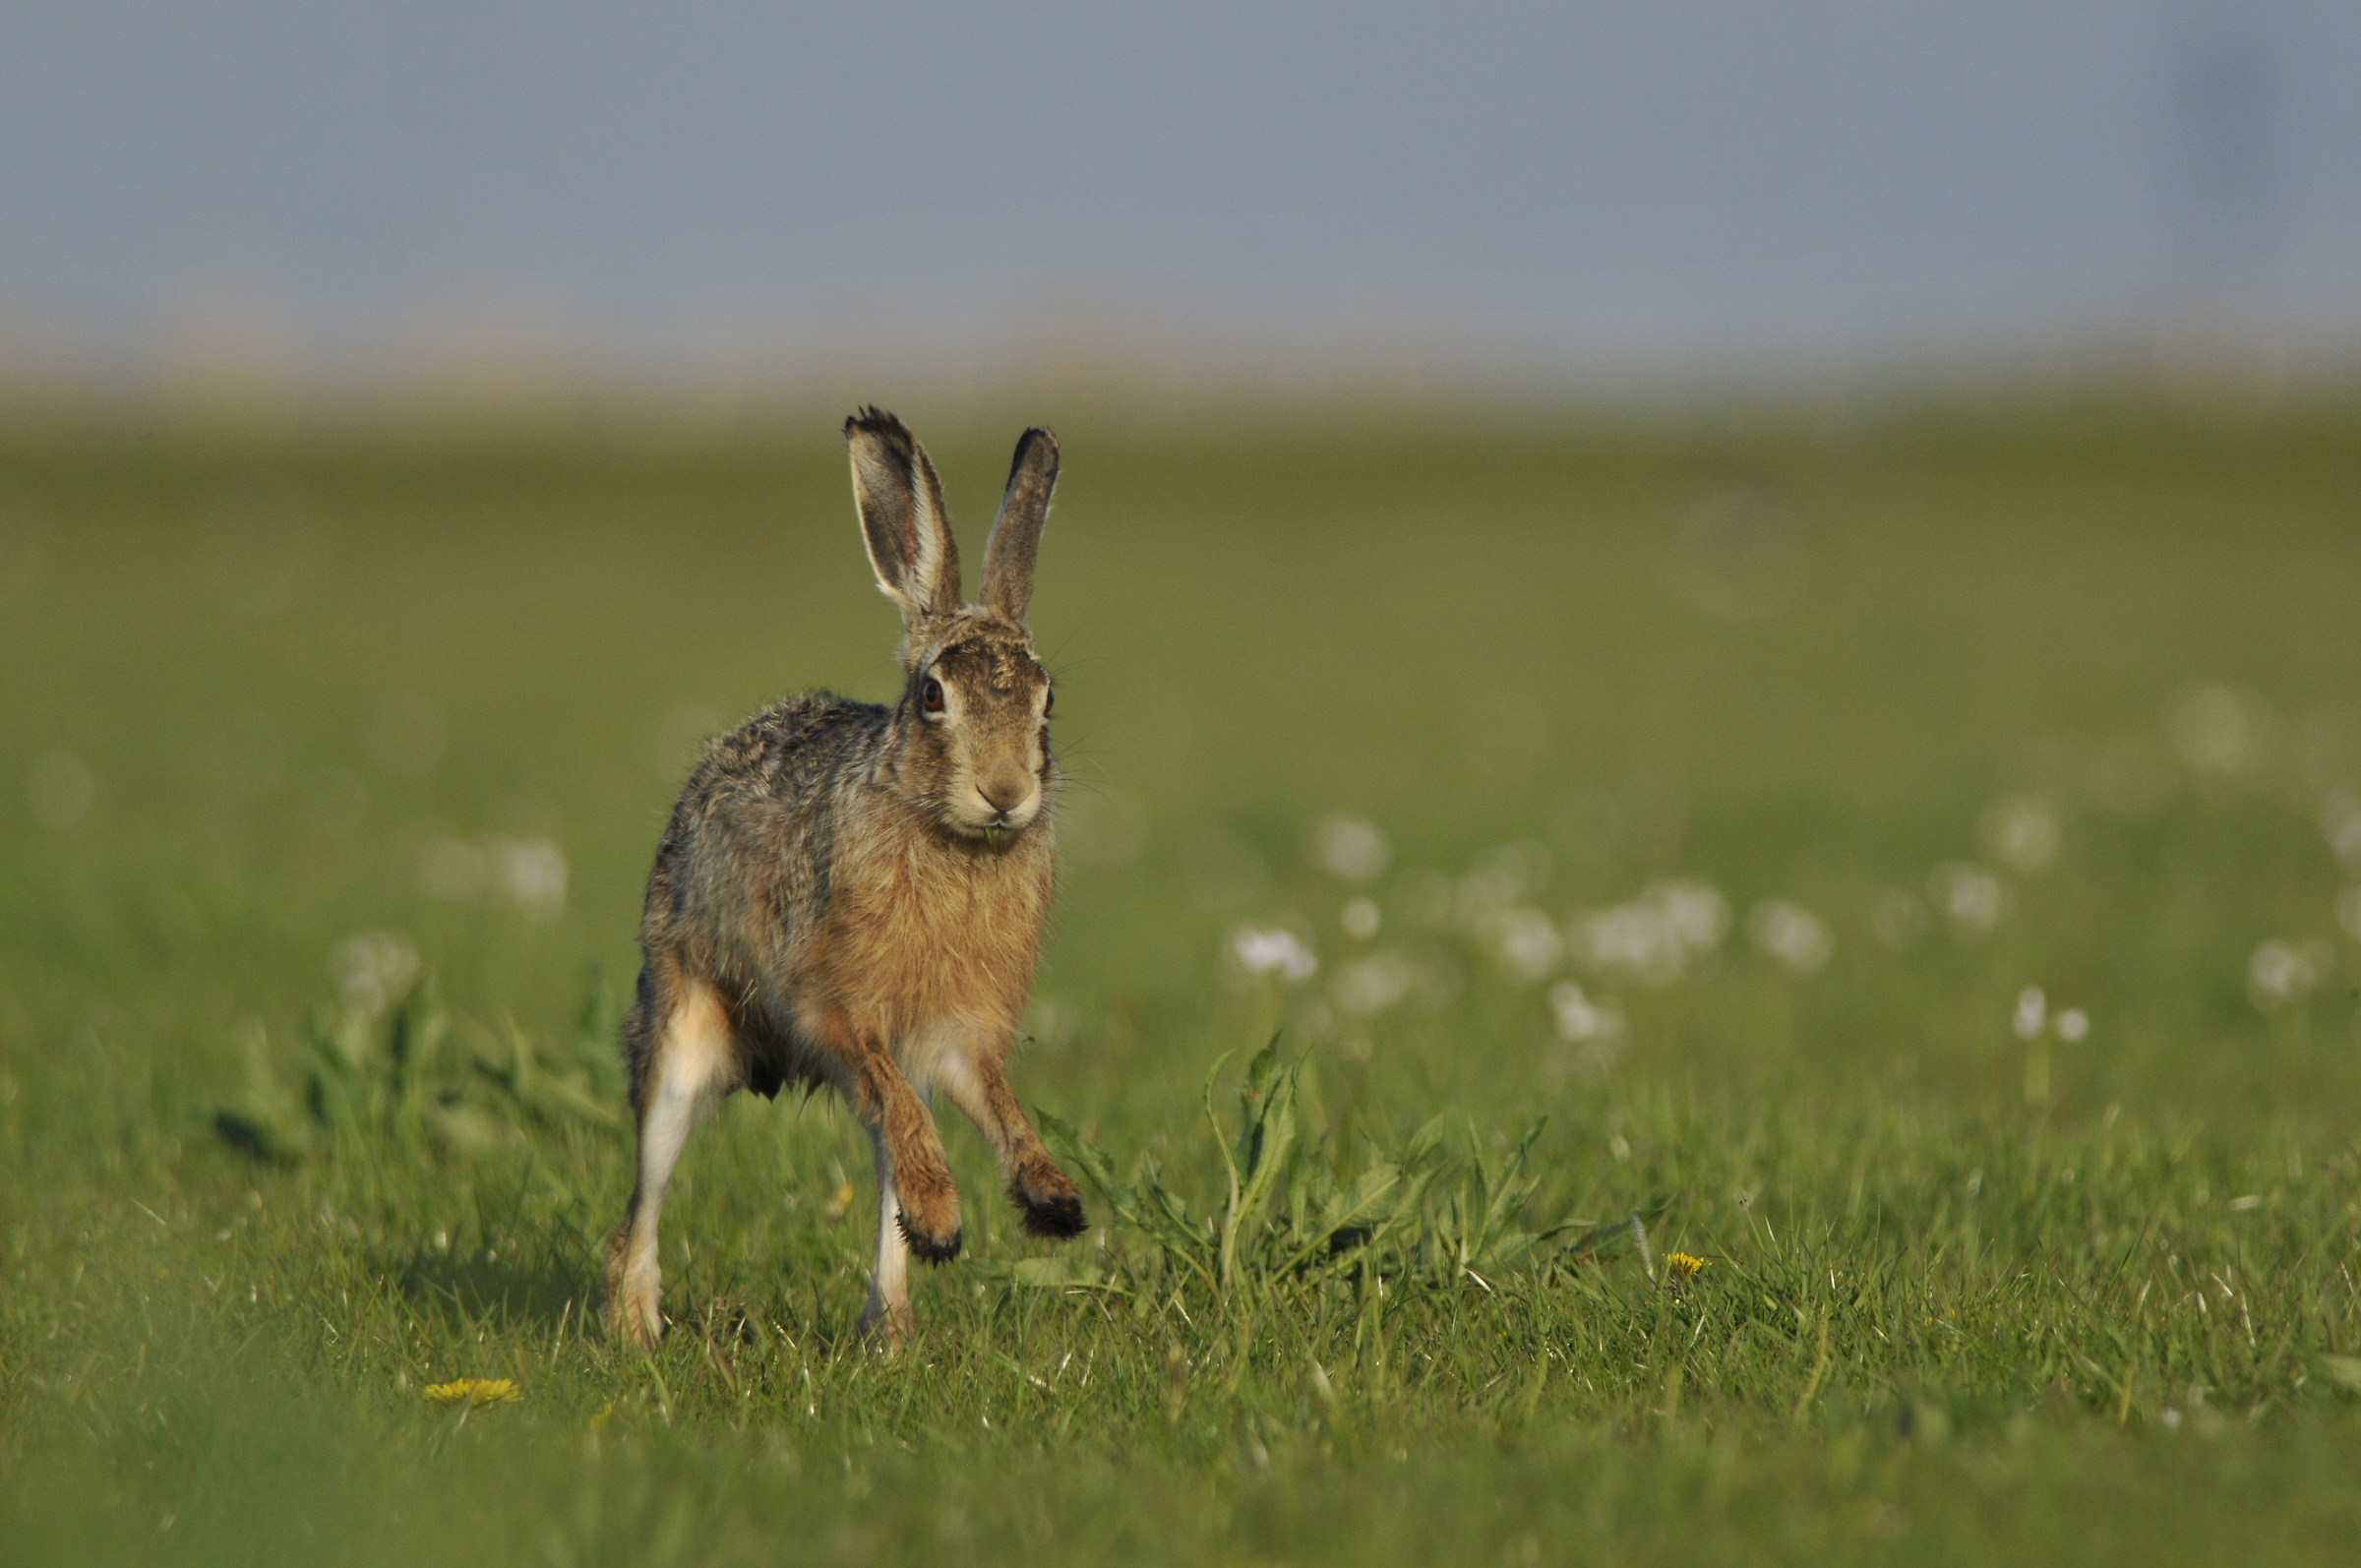 Hare on the run...